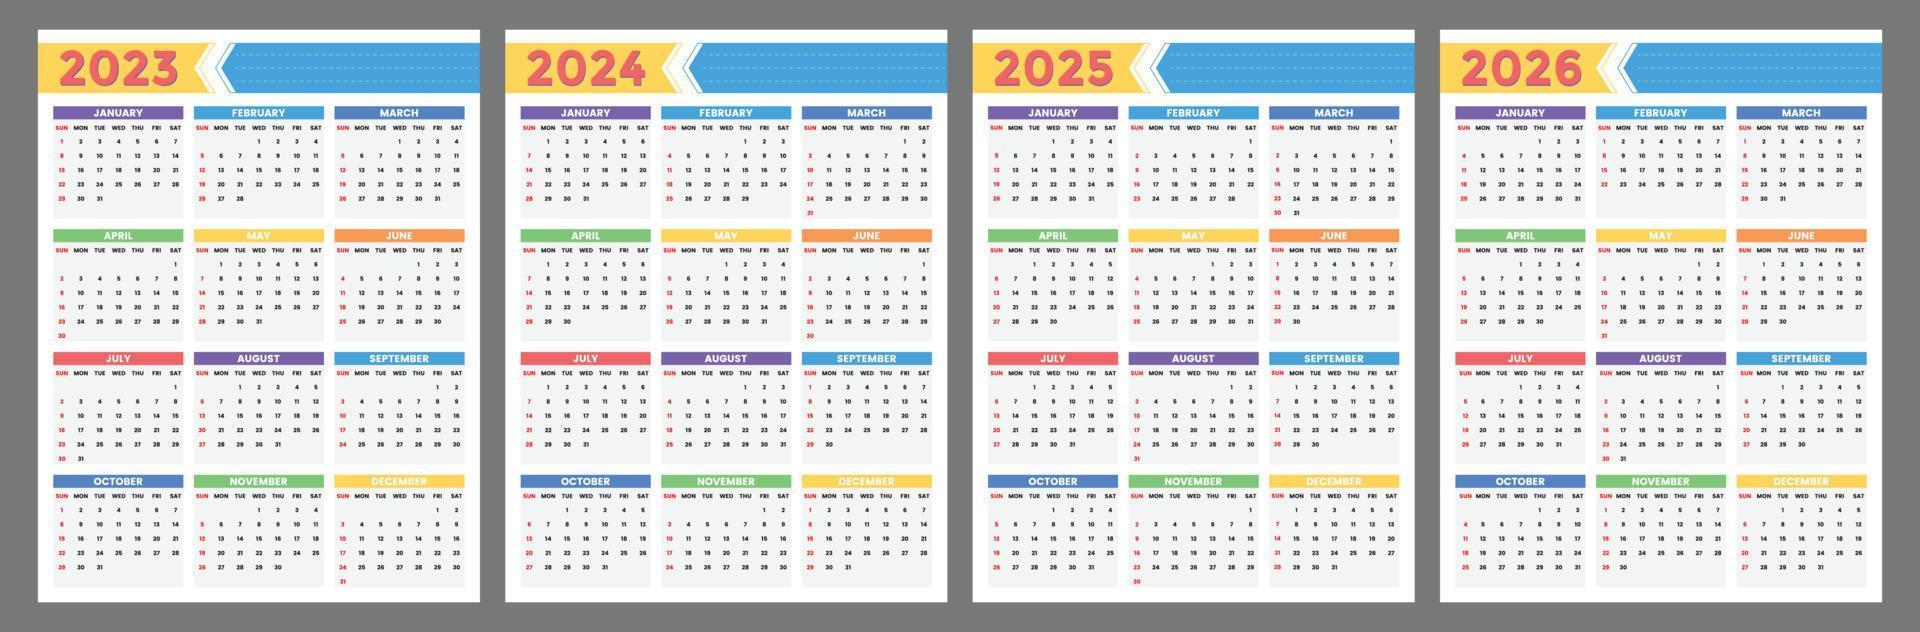 Kalender 2023 2024 2025 2026 Jahre. die woche beginnt am sonntag vektorvorlage vektor